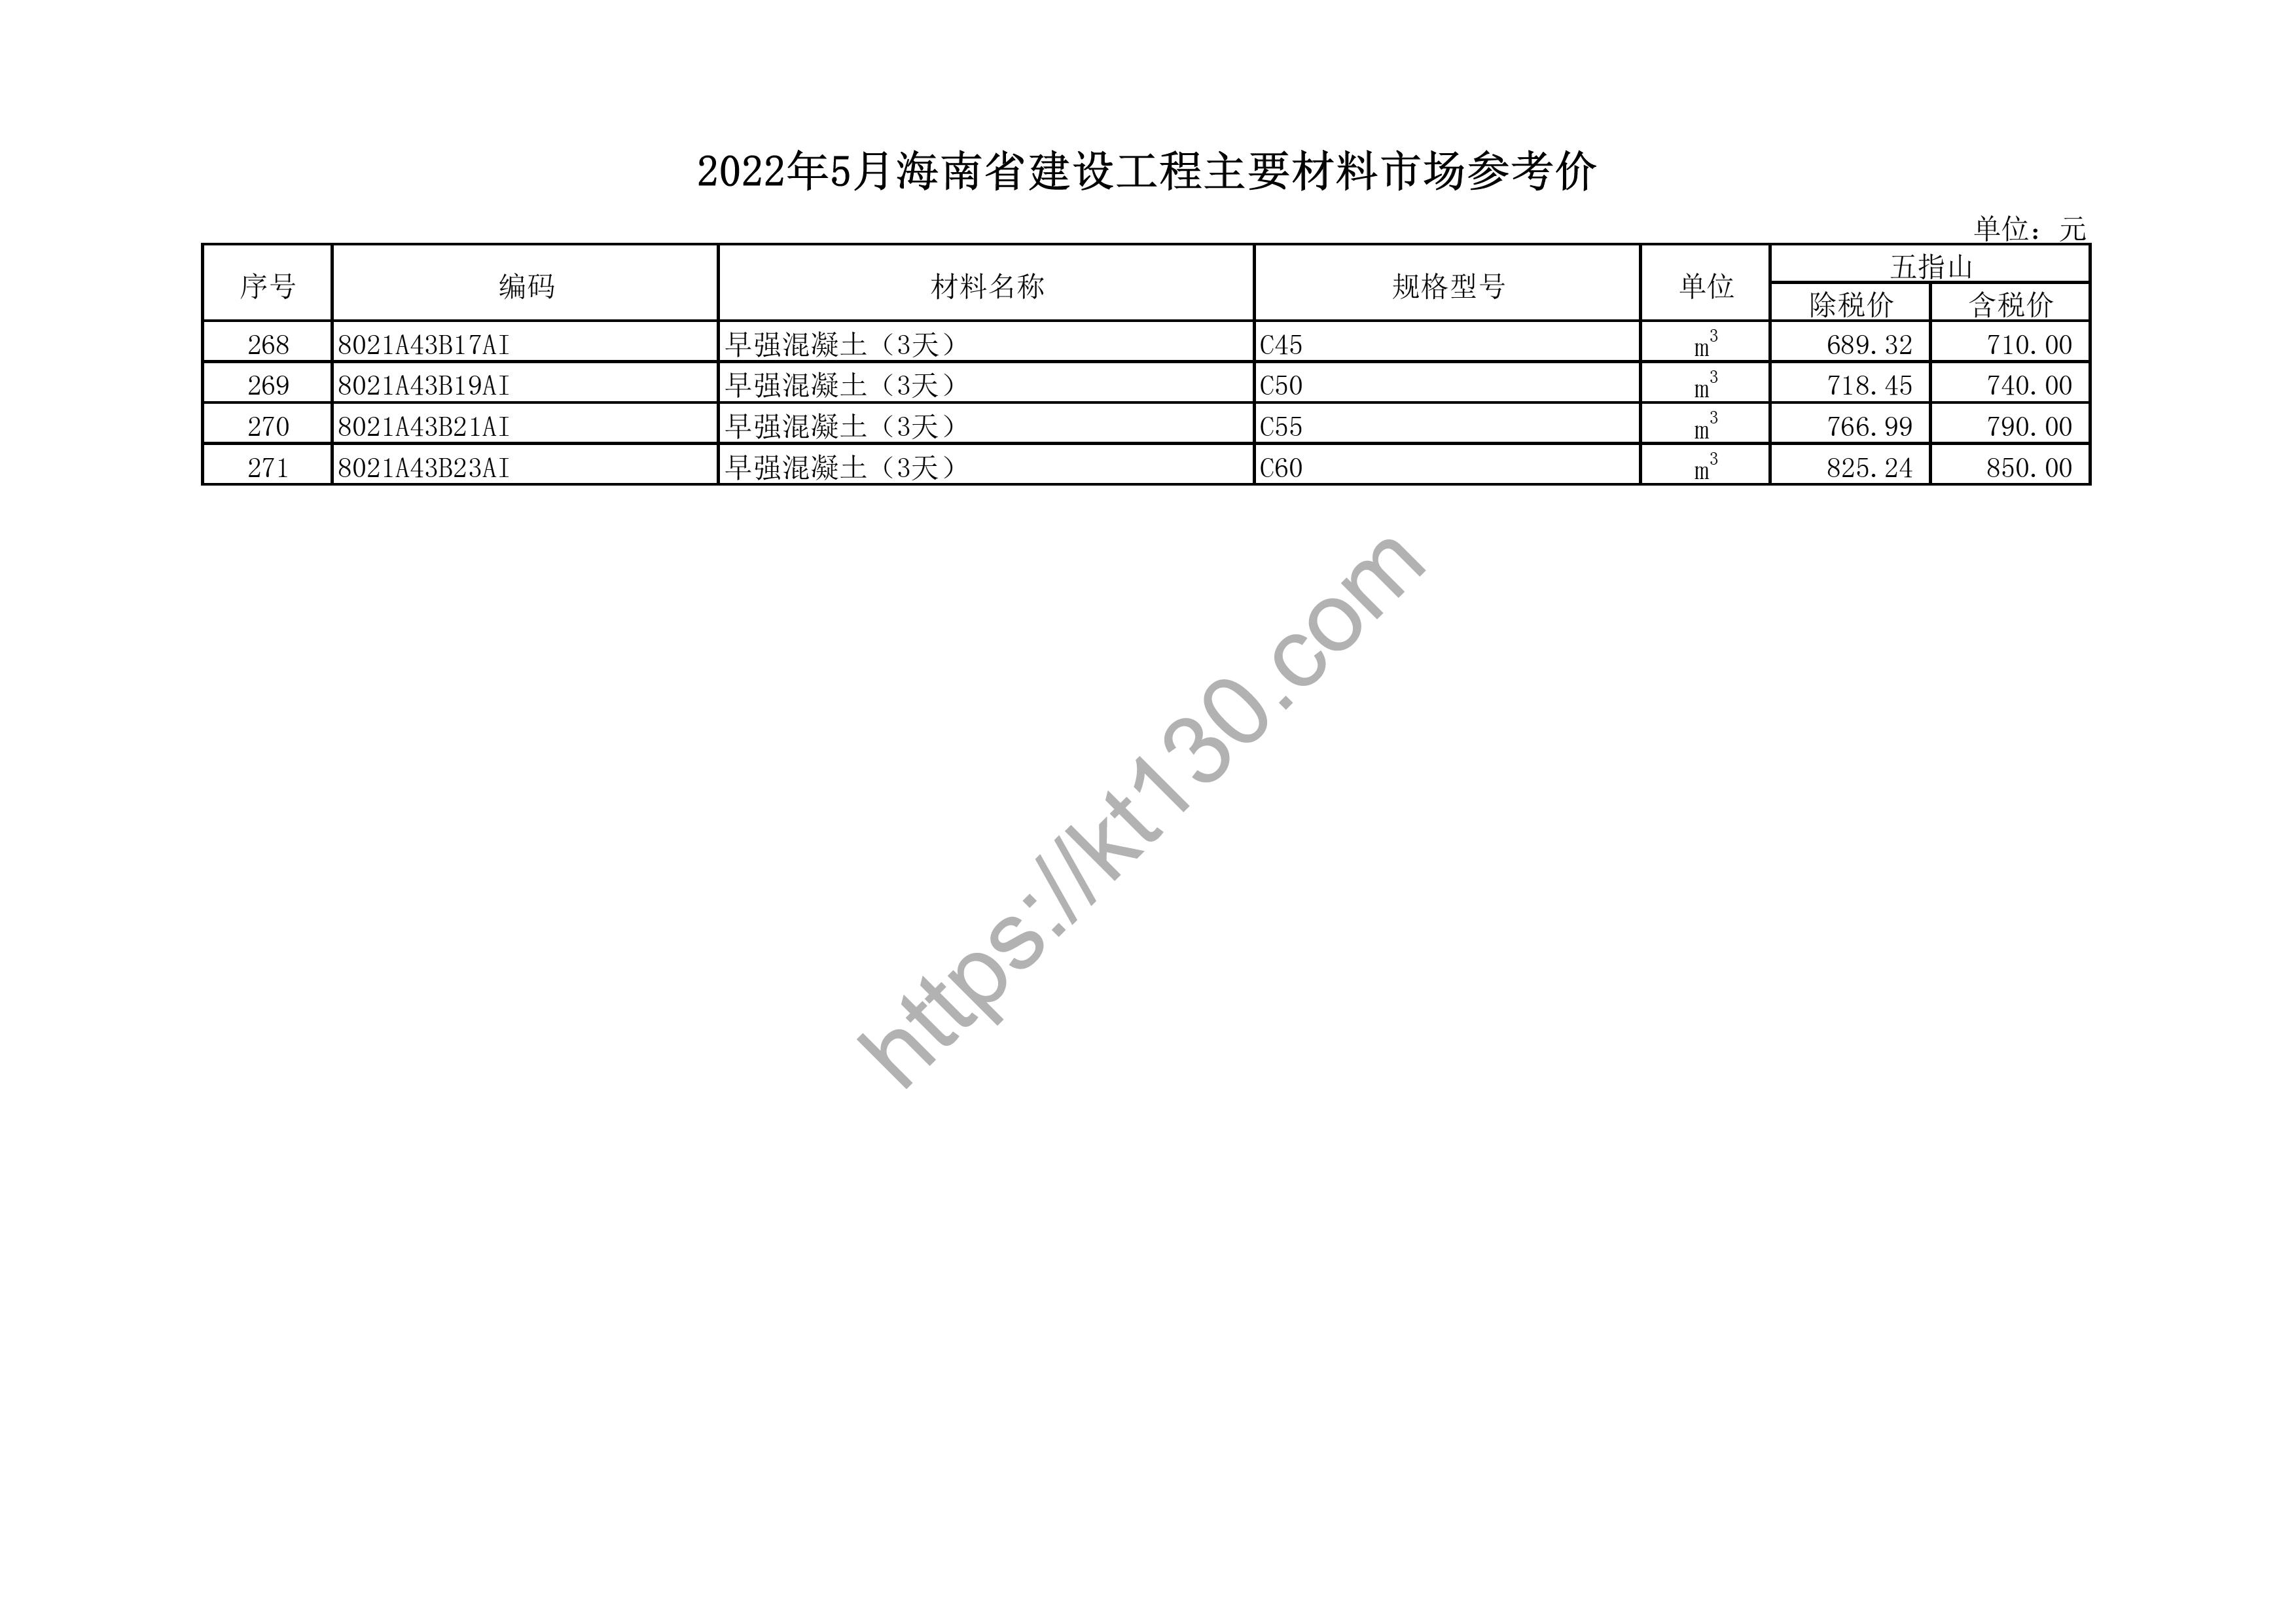 海南省2022年5月建筑材料价_木、竹材料_44387